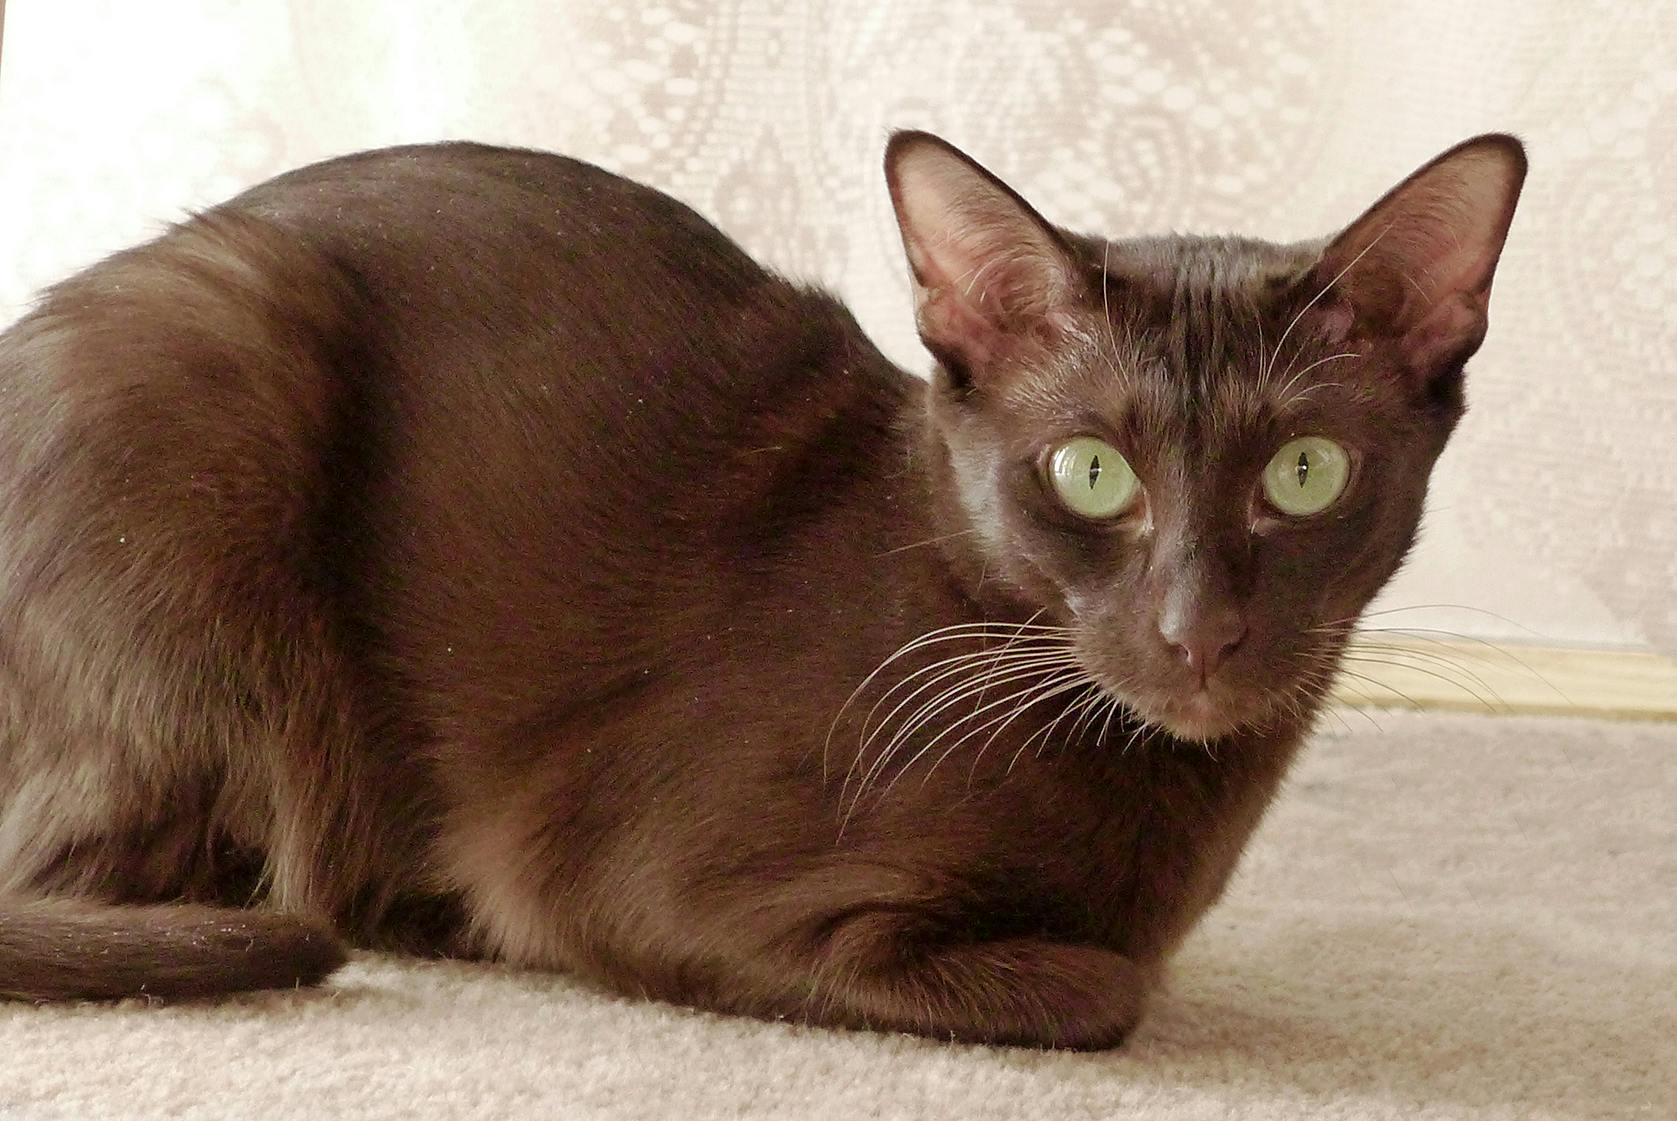 Havana Brown cat sitting on a carpeted floor.